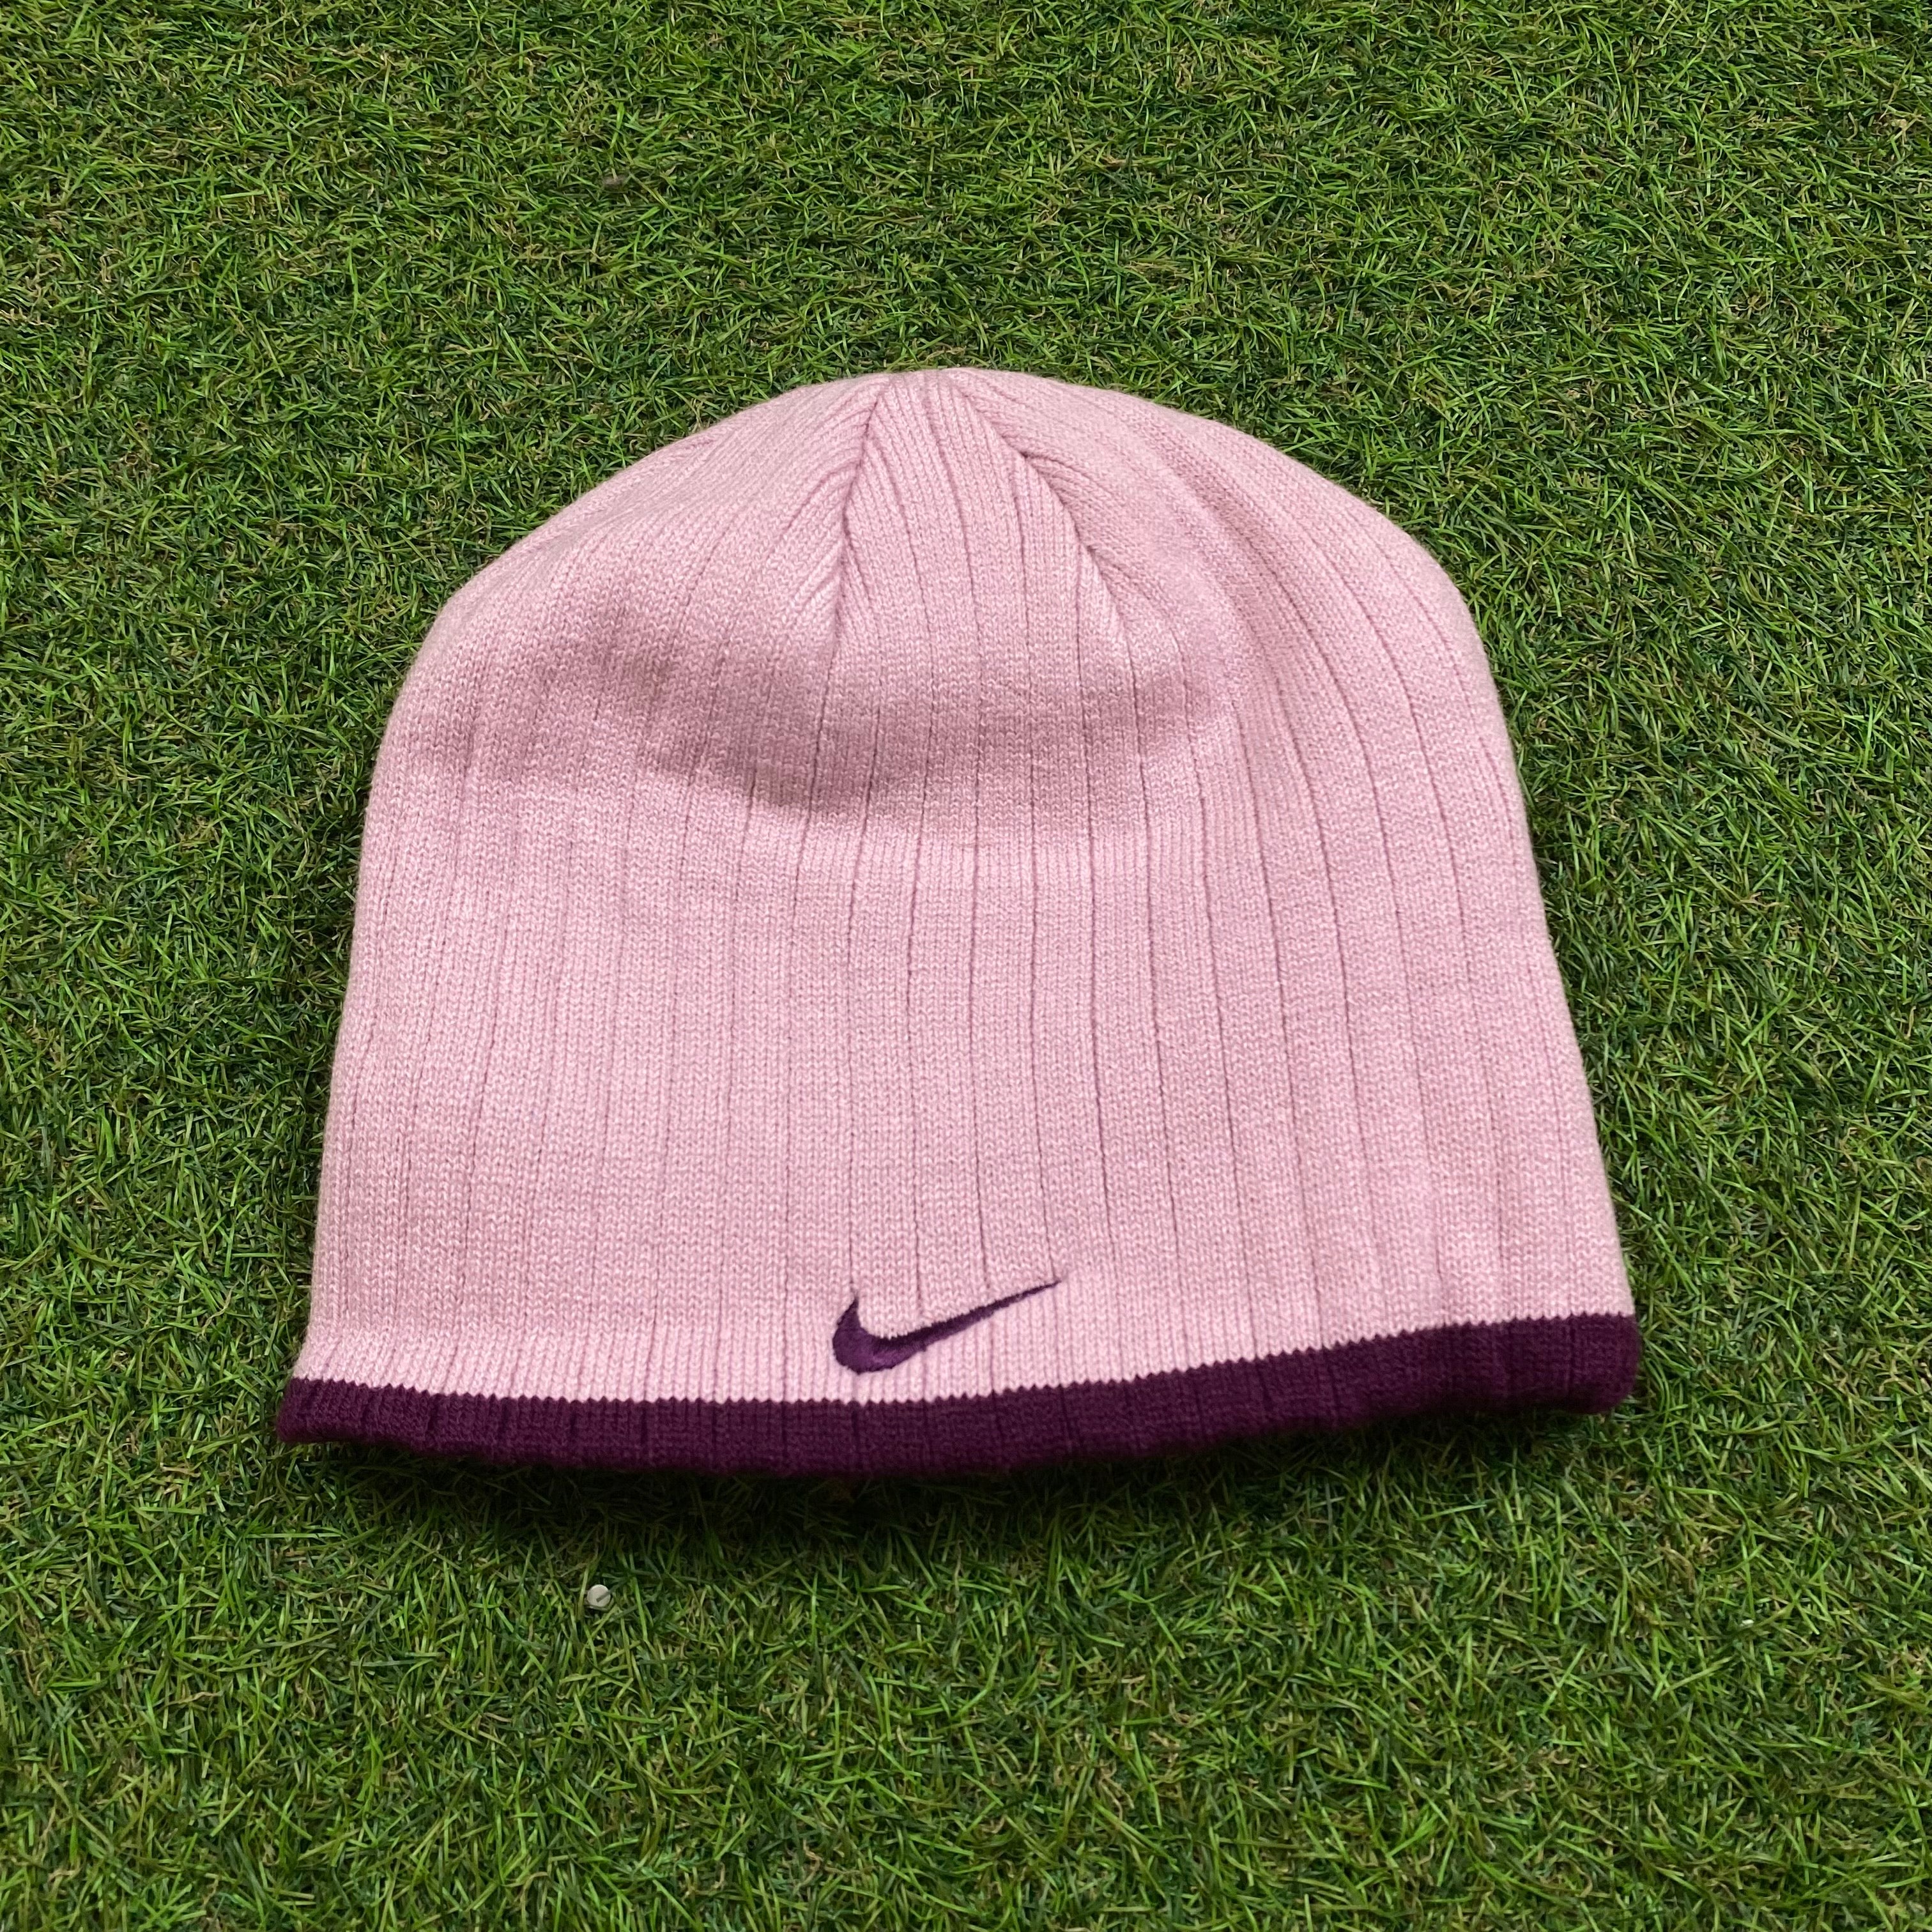  Pink Nike Hat